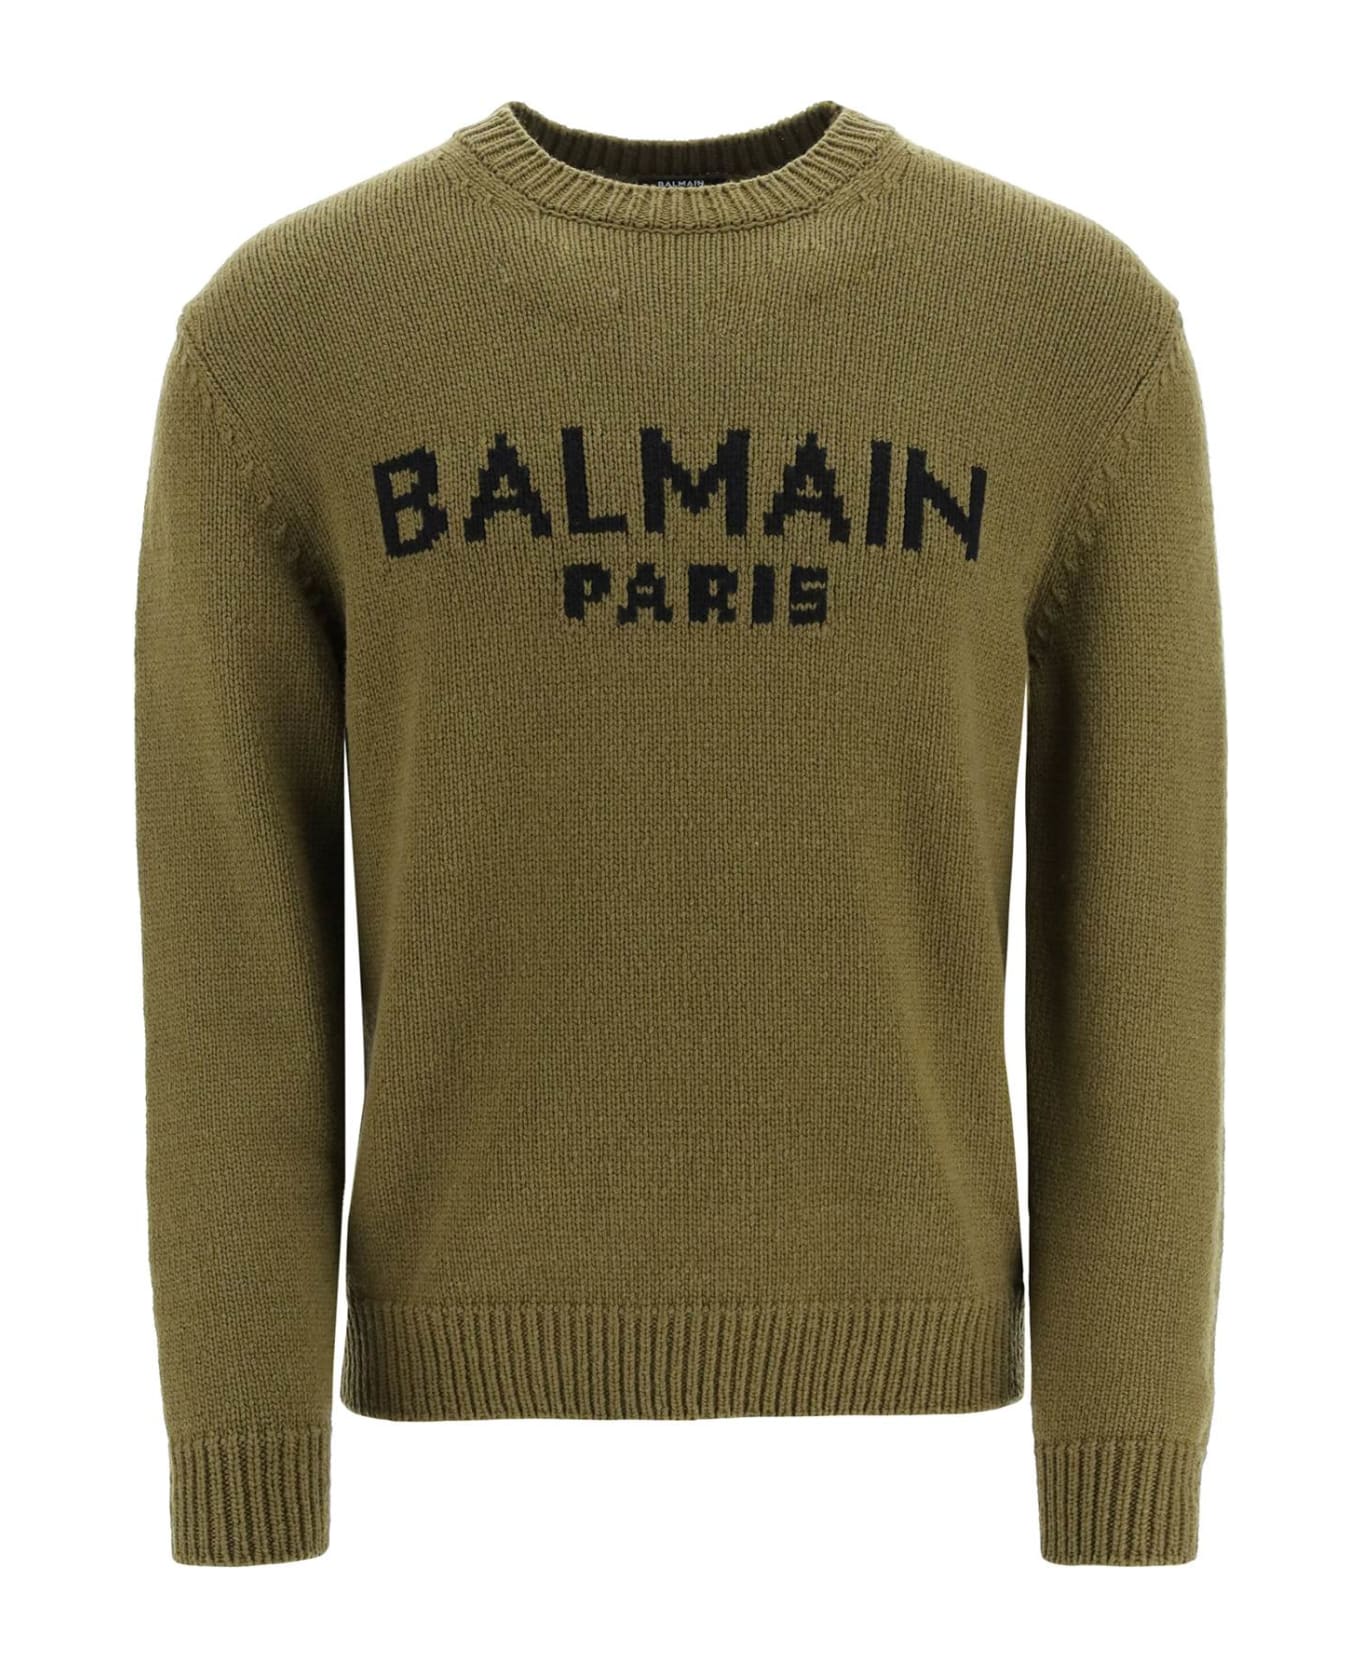 Balmain Wool Blend Pullover - Green